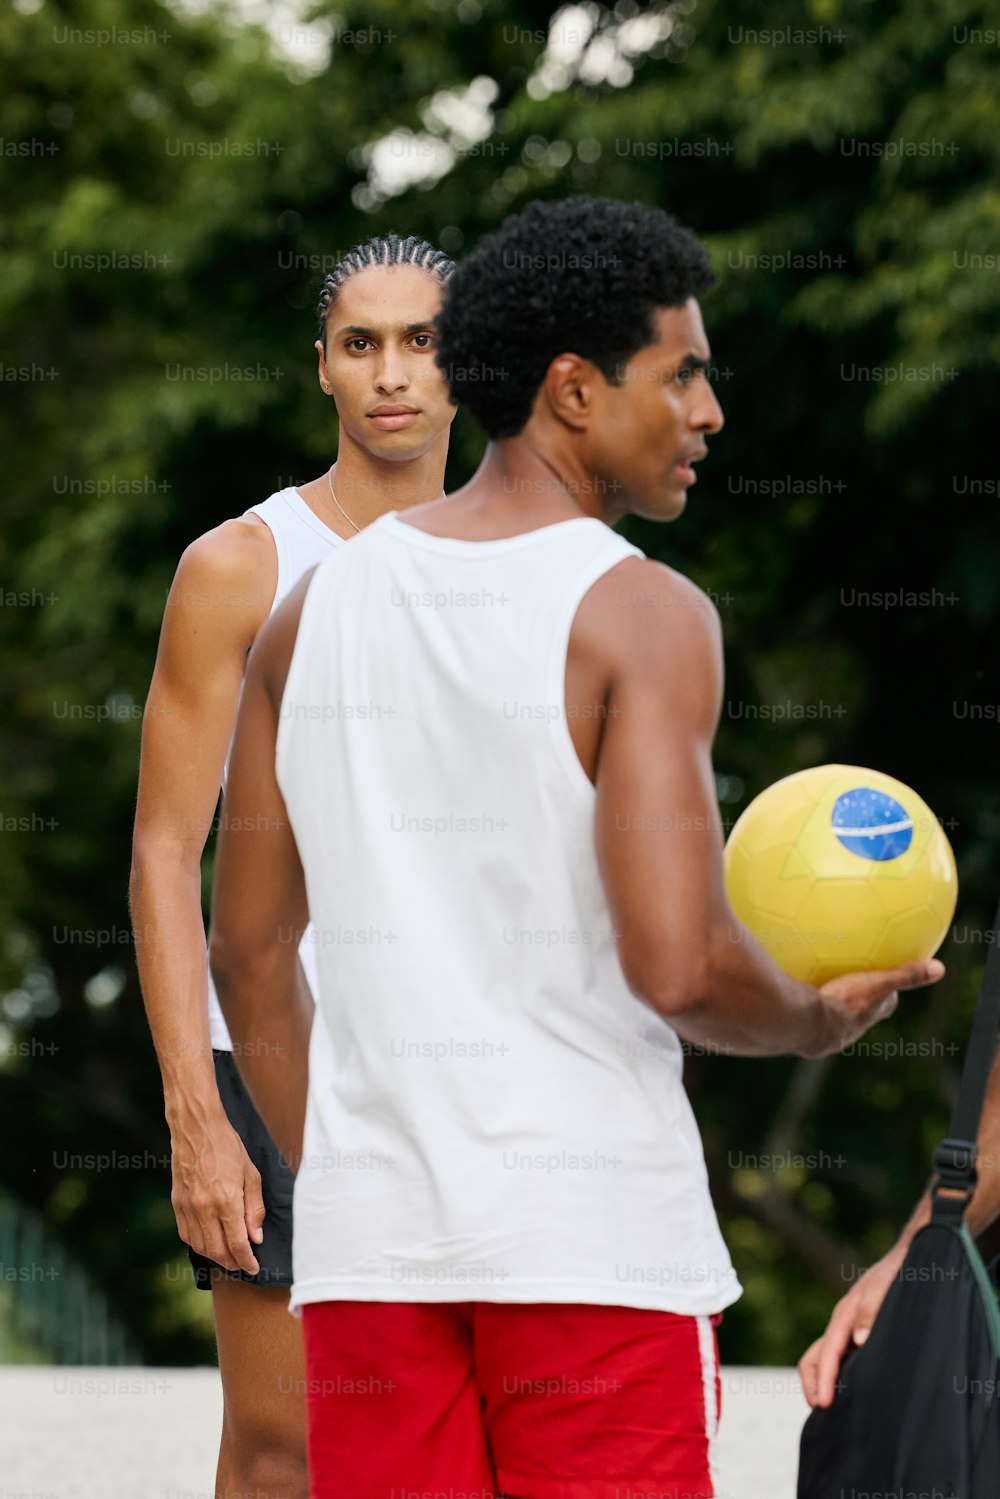 Un hombre sosteniendo un frisbee amarillo junto a otro hombre